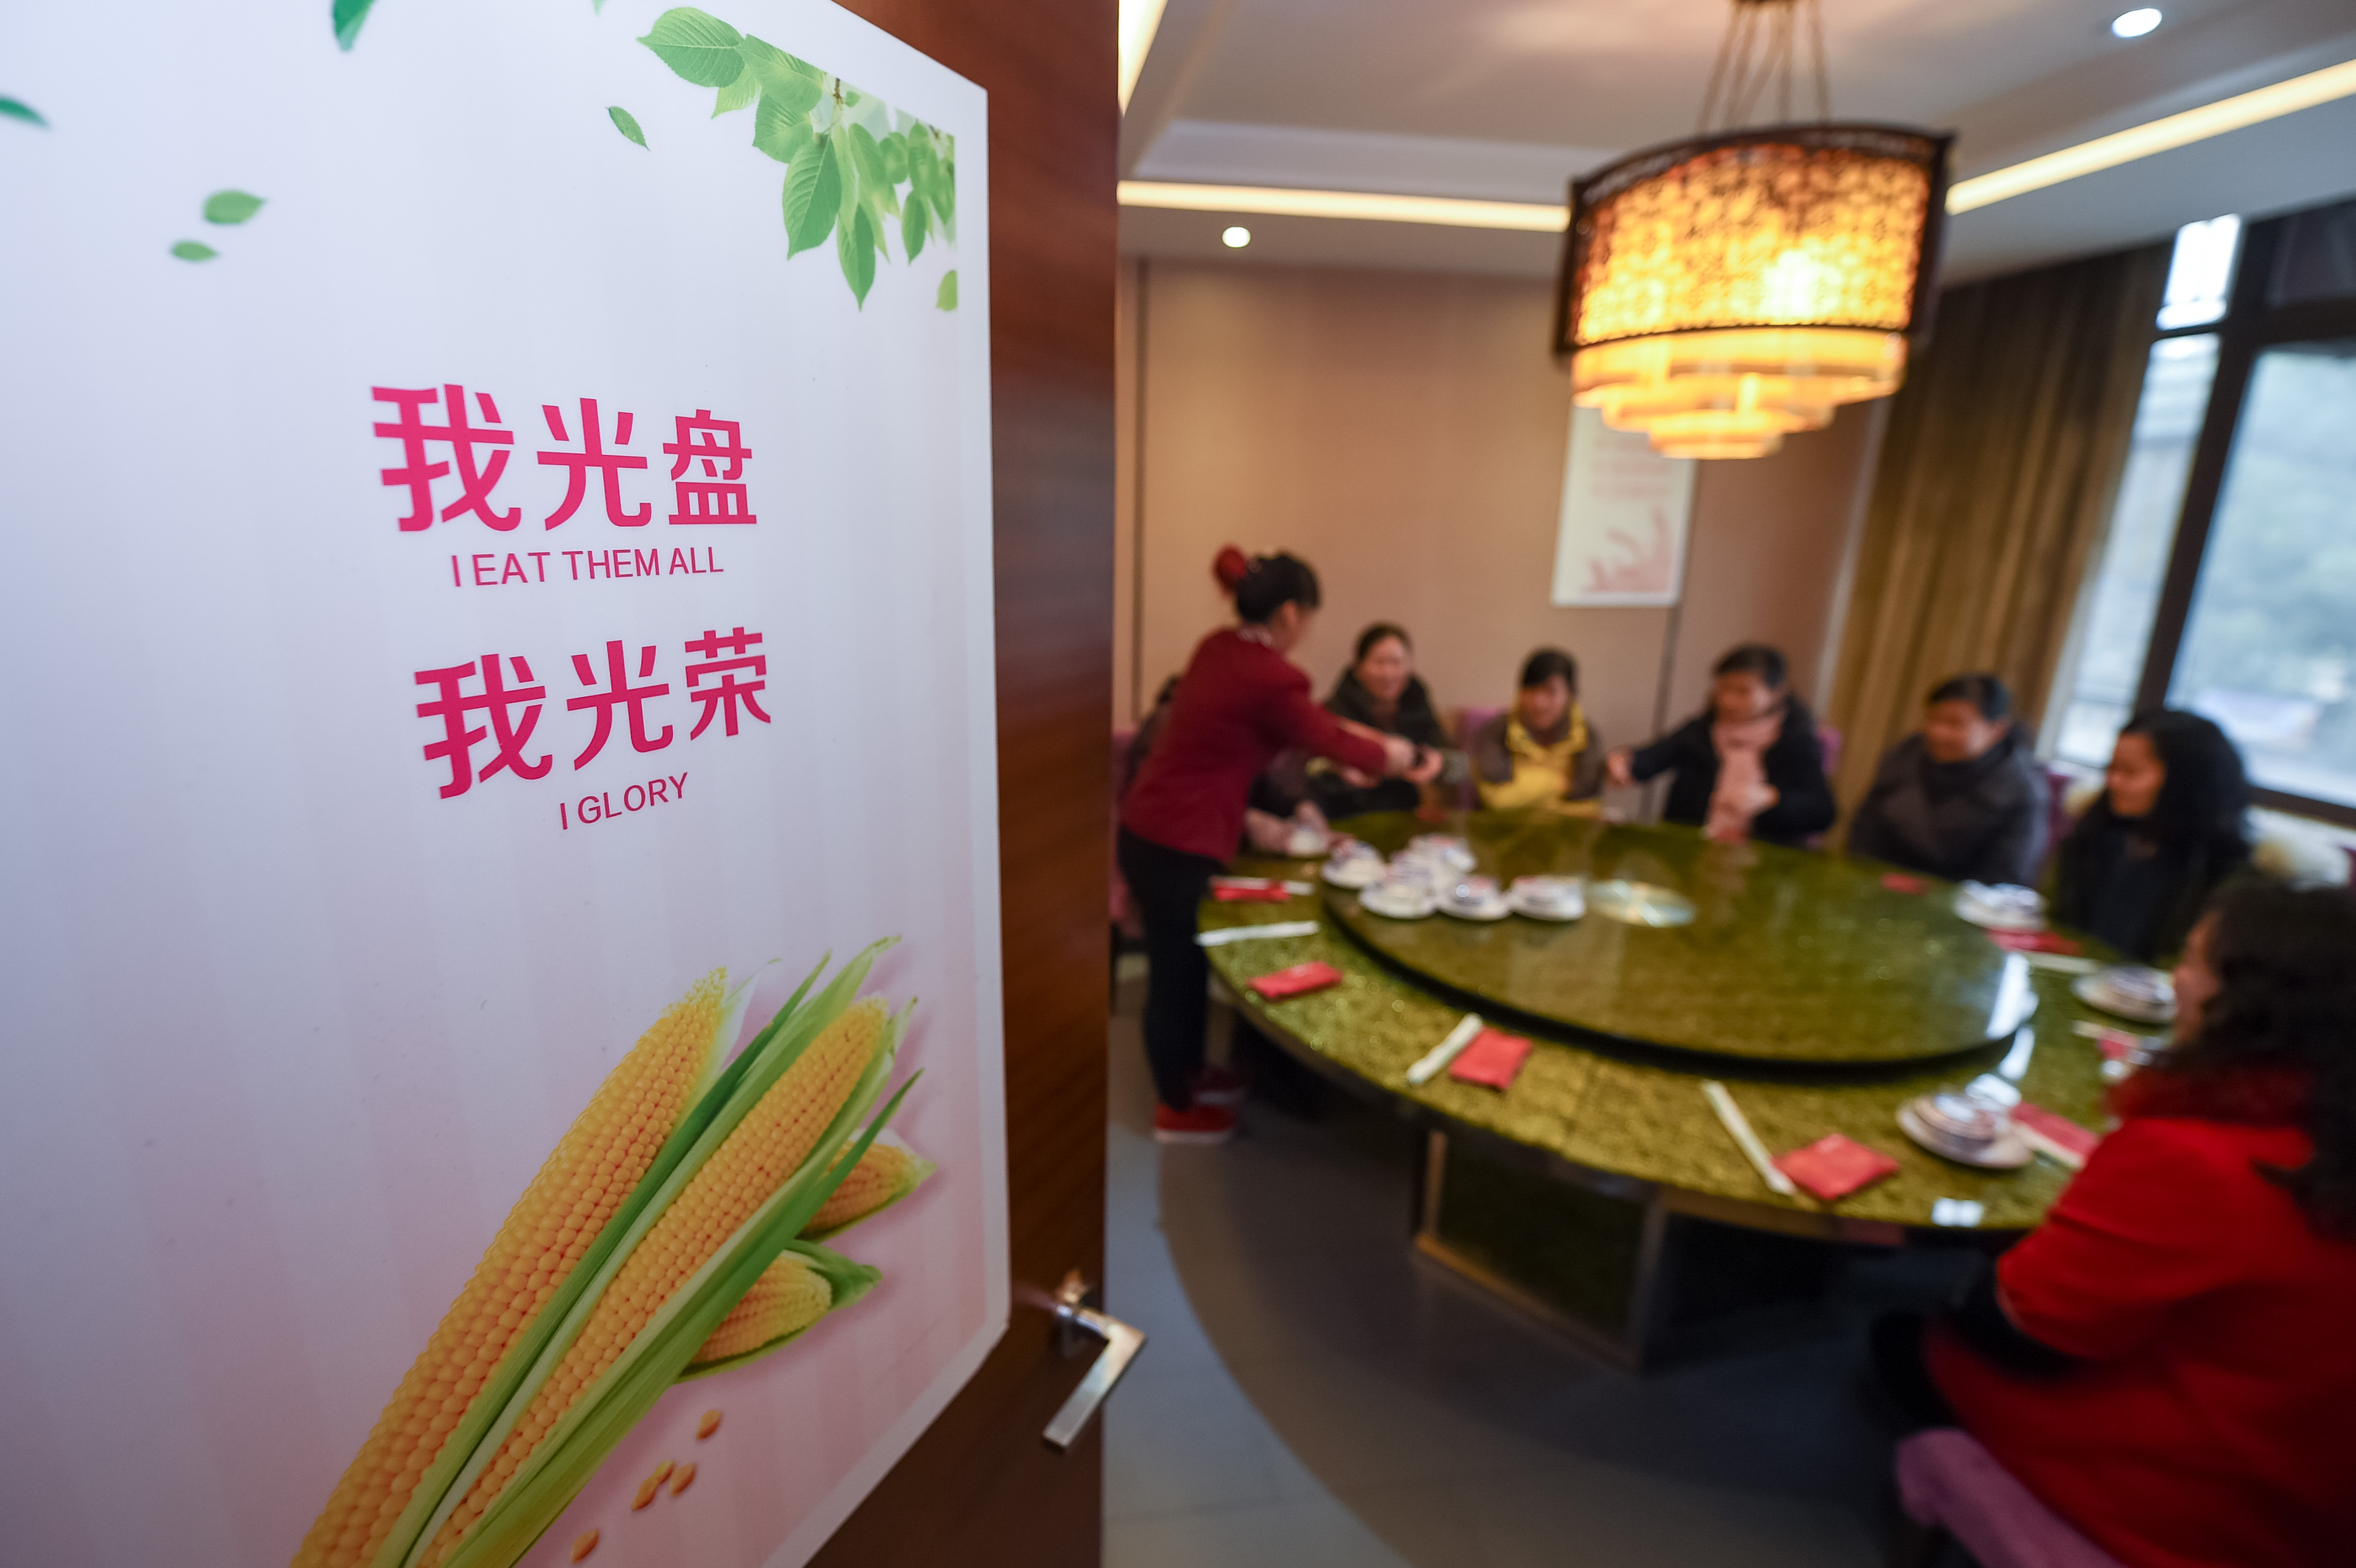  　　2015年12月10日，在安徽省合肥市黄山路一家饭店内拍摄的“厉行节约、文明用餐”主题宣传画。